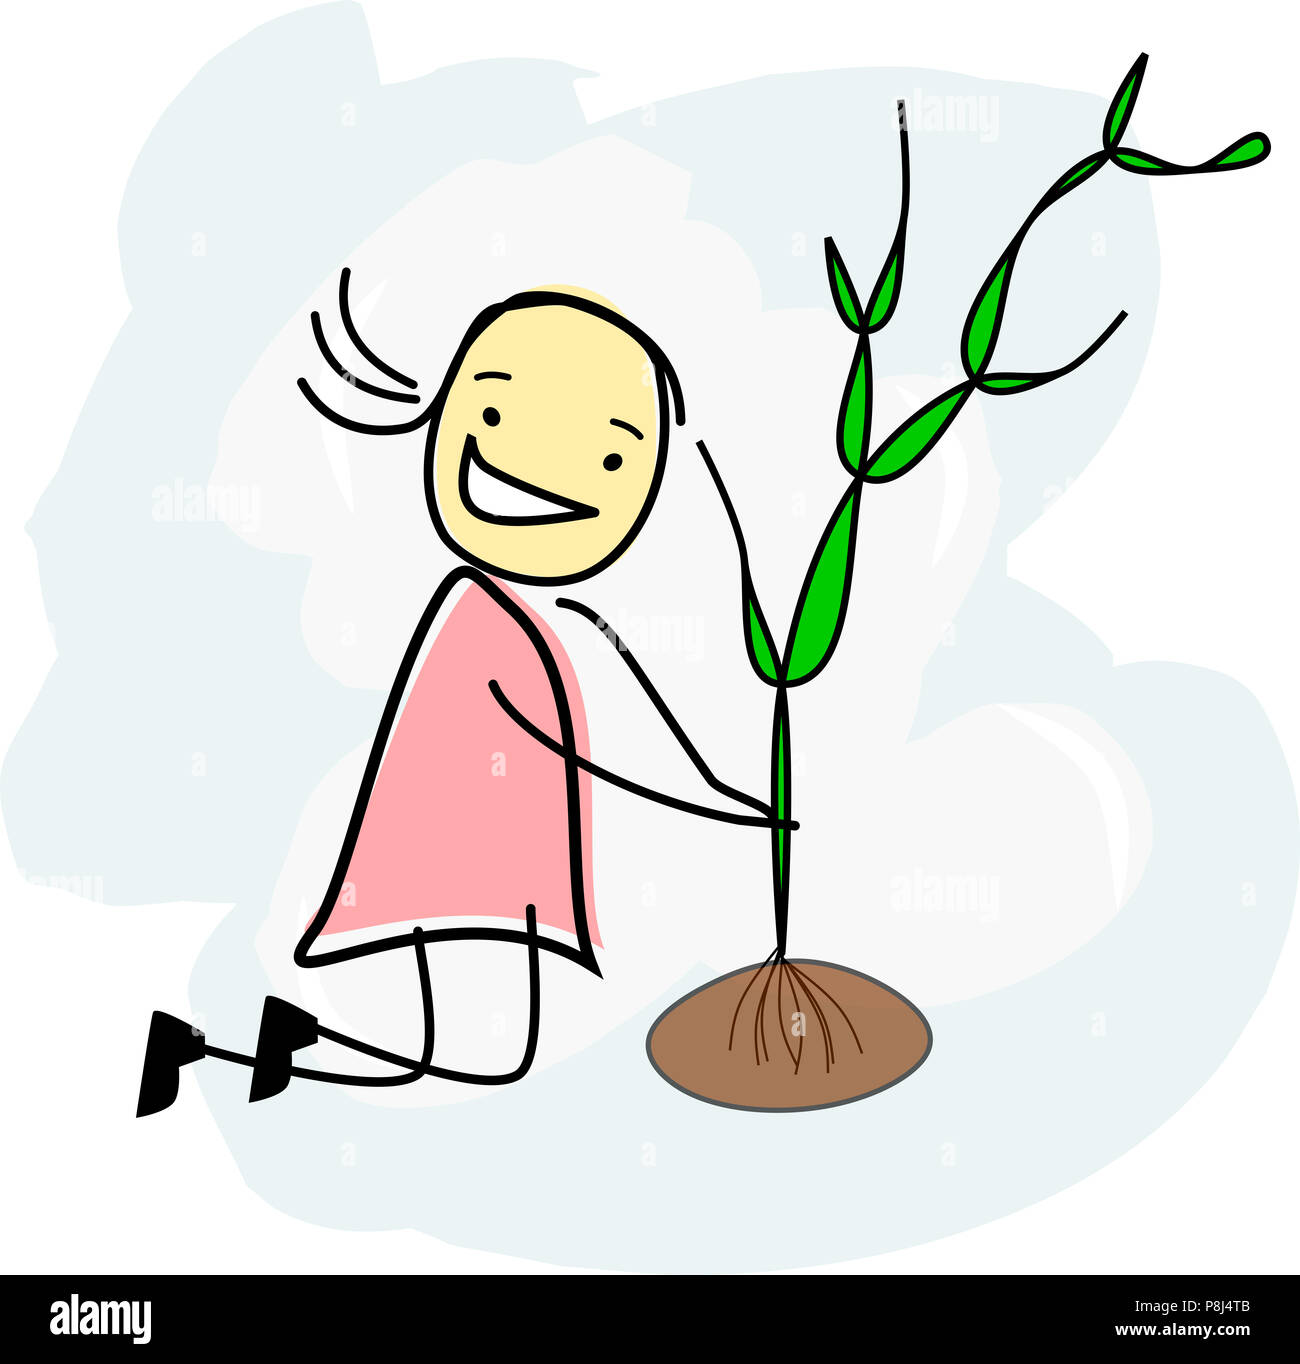 Kind einen Baum pflanzen Stockfotografie - Alamy